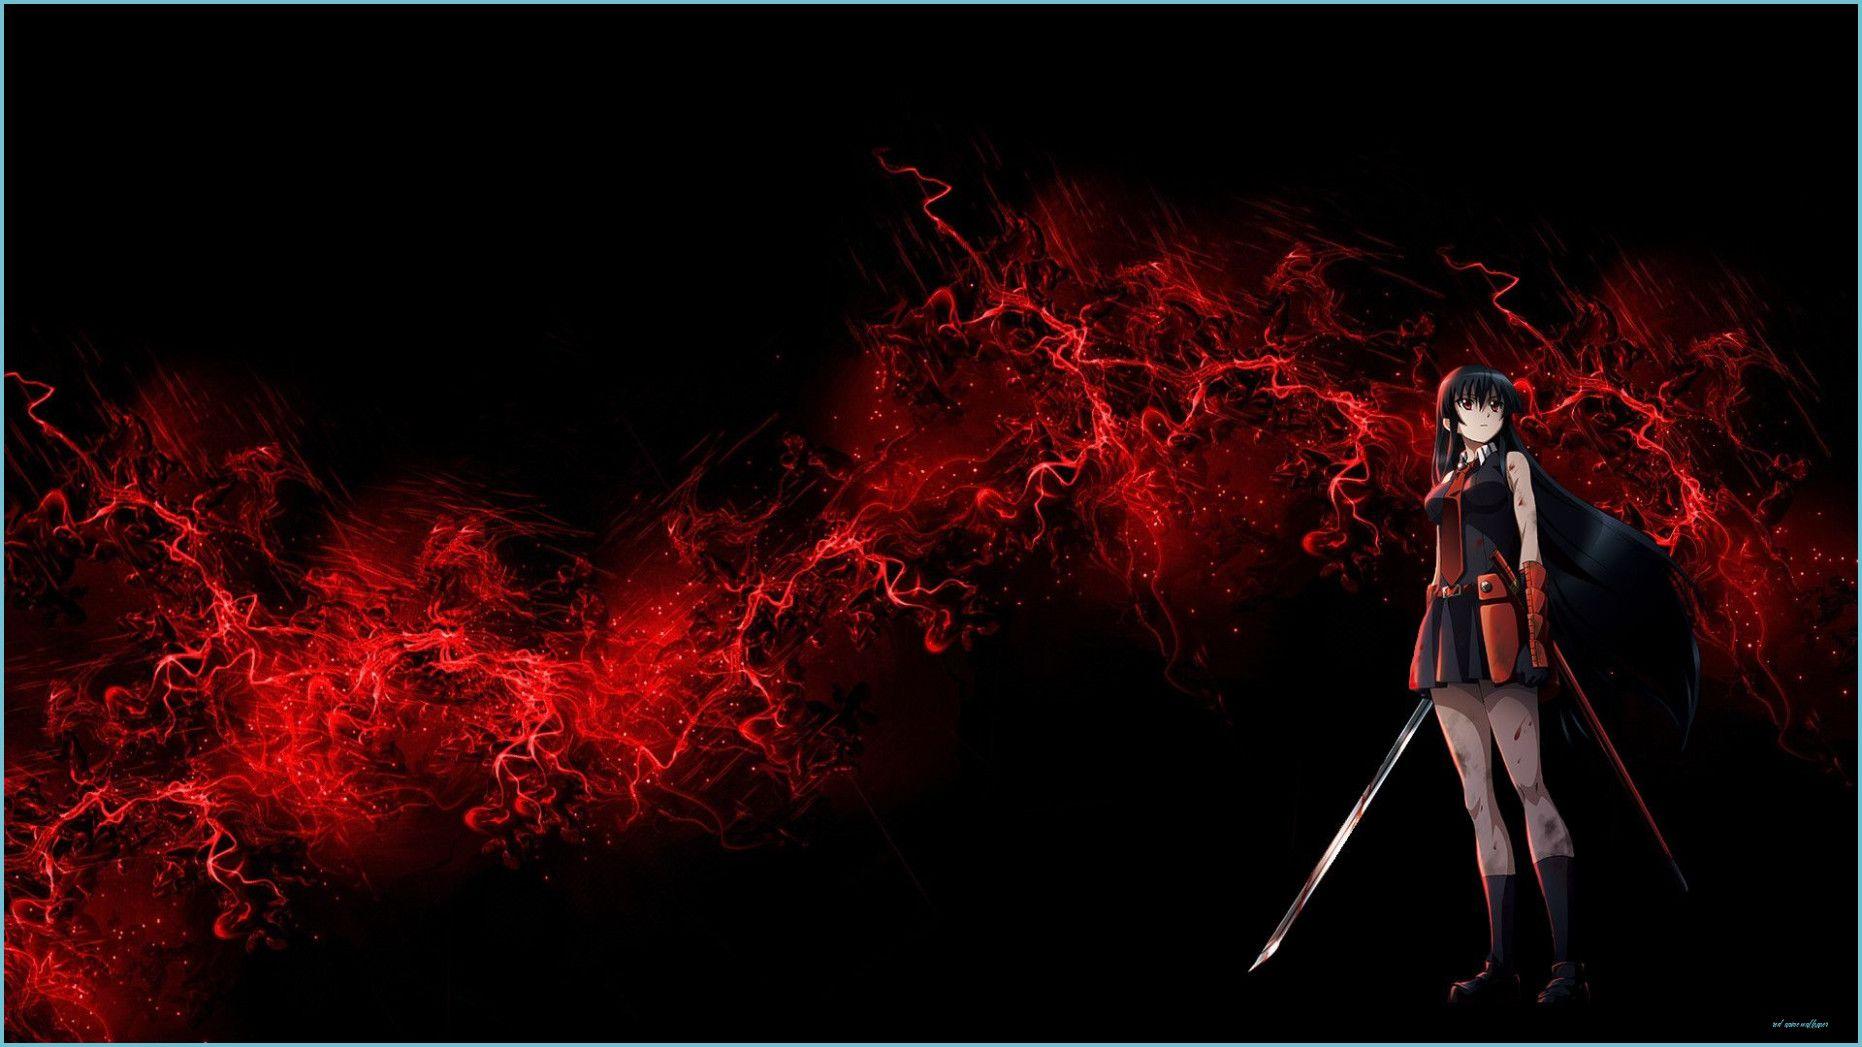 Red Soul Eater Anime Maka Albarn Death the Kid Black Star Scythe HD  wallpaper  anime  Wallpaper Better